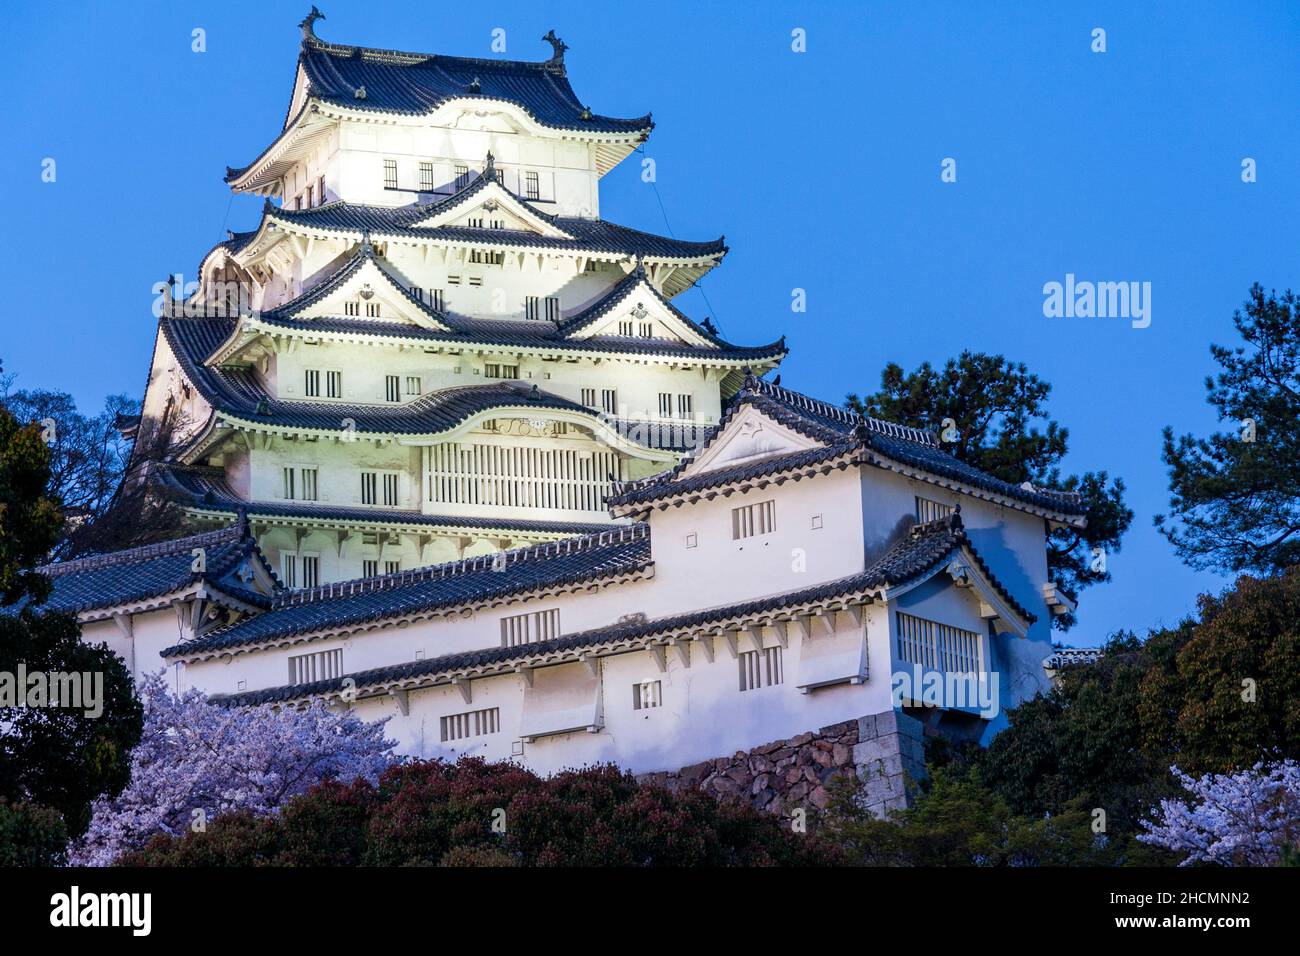 Il famoso castello bianco di Himeji illuminato di notte. Il mantenimento principale è illuminato da forti proiettori che donano al mantenimento una luce verdastra. Foto Stock